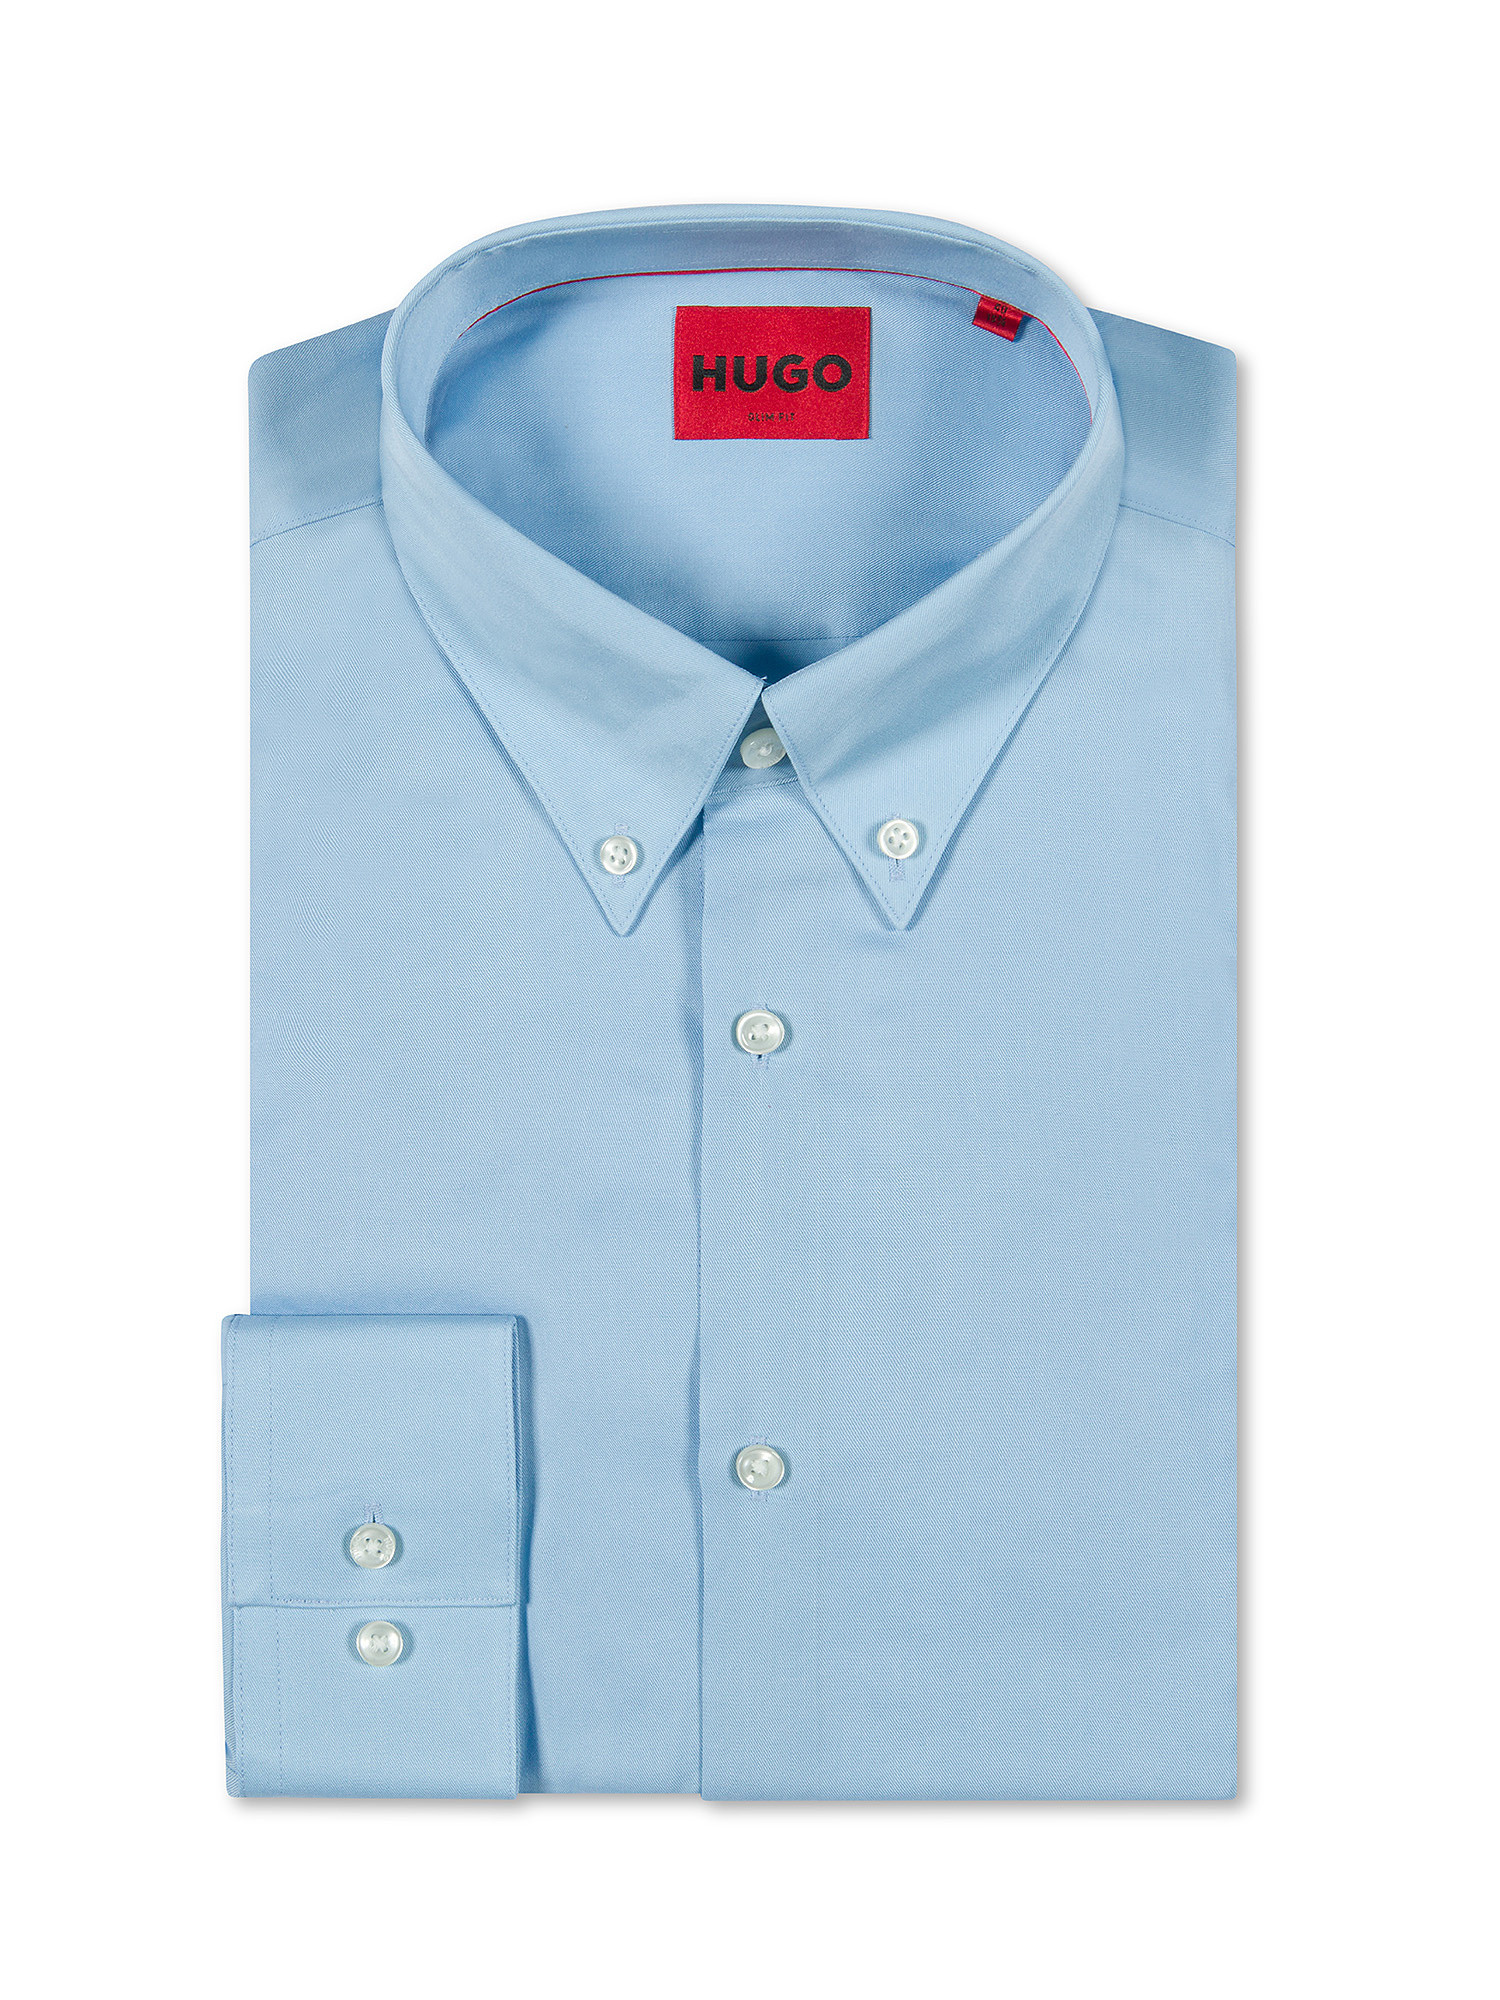 Hugo - Slim fit shirt, Light Blue, large image number 0